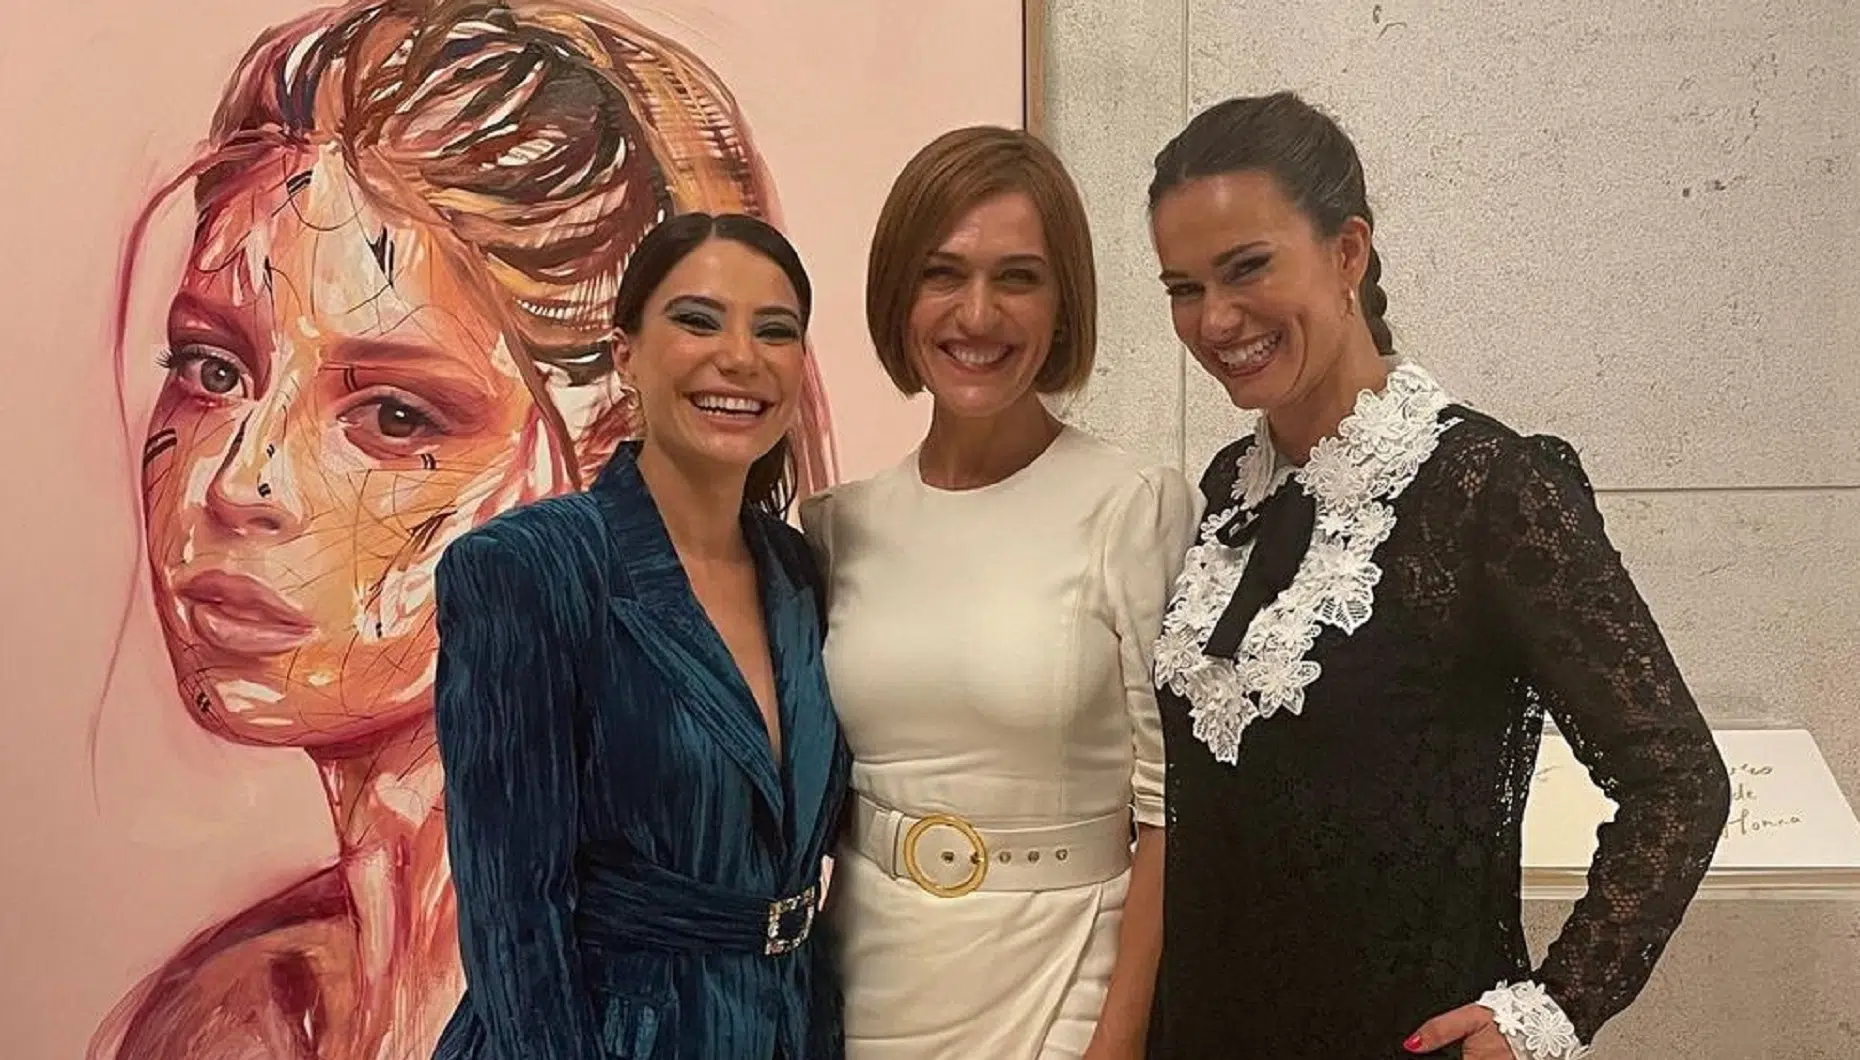 Carolina Carvalho, Fatima Lopes, Claudia Vieira